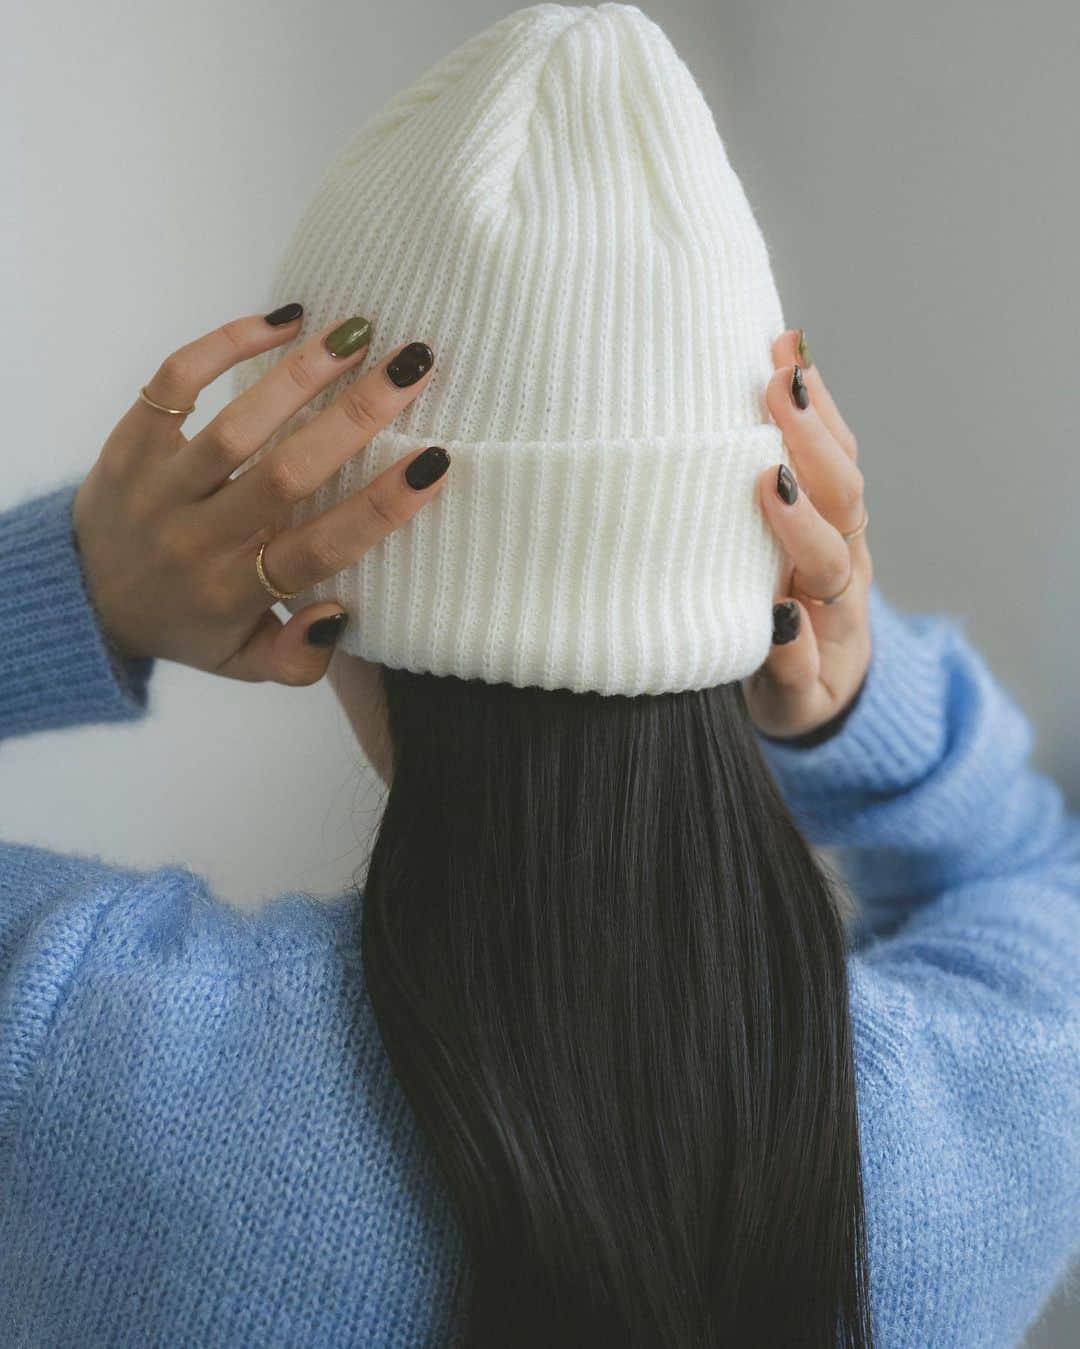 Vannie Officialのインスタグラム：「リブニット帽/ビーニー  … Design …  ・冬の大定番ニット帽 ・もちっとした厚みのある編地 ・伸縮性がしっかりあり、つけ心地抜群 ・頭のサイズに合わせて折り返す位置を変えて調整可能 ・ベーシックなアイボリー、ブラック 今季らしいおしゃれなグレー  … Styling … 冬の防寒にぴったりのベーシックなニットビーニー デニム、ニットとあわせてカジュアルにはもちろん ワンピースやスカートでレディライクなスタイリングに合わせても◎ 前髪を全てしまって韓国っぽくかぶるのもトレンド  ━━━━━━━━━━━━━━━━━━━━━  透け感：なし 裏地：なし 厚さ：厚め 伸縮性：あり 光沢感：なし  ━━━━━━━━━━━━━━━━━━━━━━ ※詳しくは洗濯タグをご確認ください #vannie_u #ヴァニーユー」